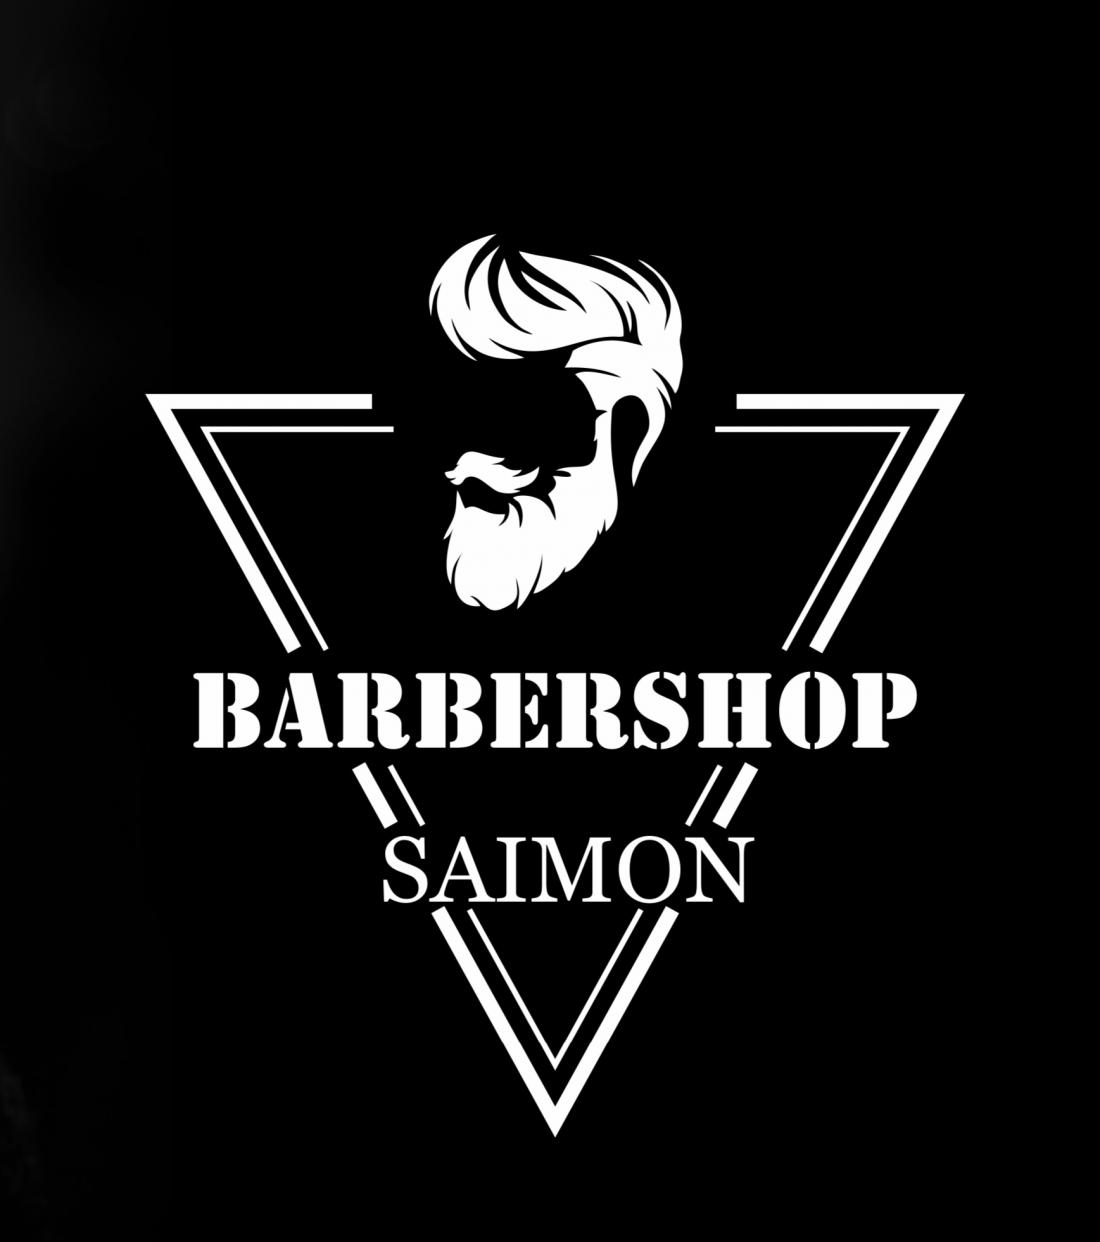 Укладка бесплатно (0 р), мужская, детская стрижка, коррекция бороды, комплексы от 15 р. в барбершопе "Saimon"